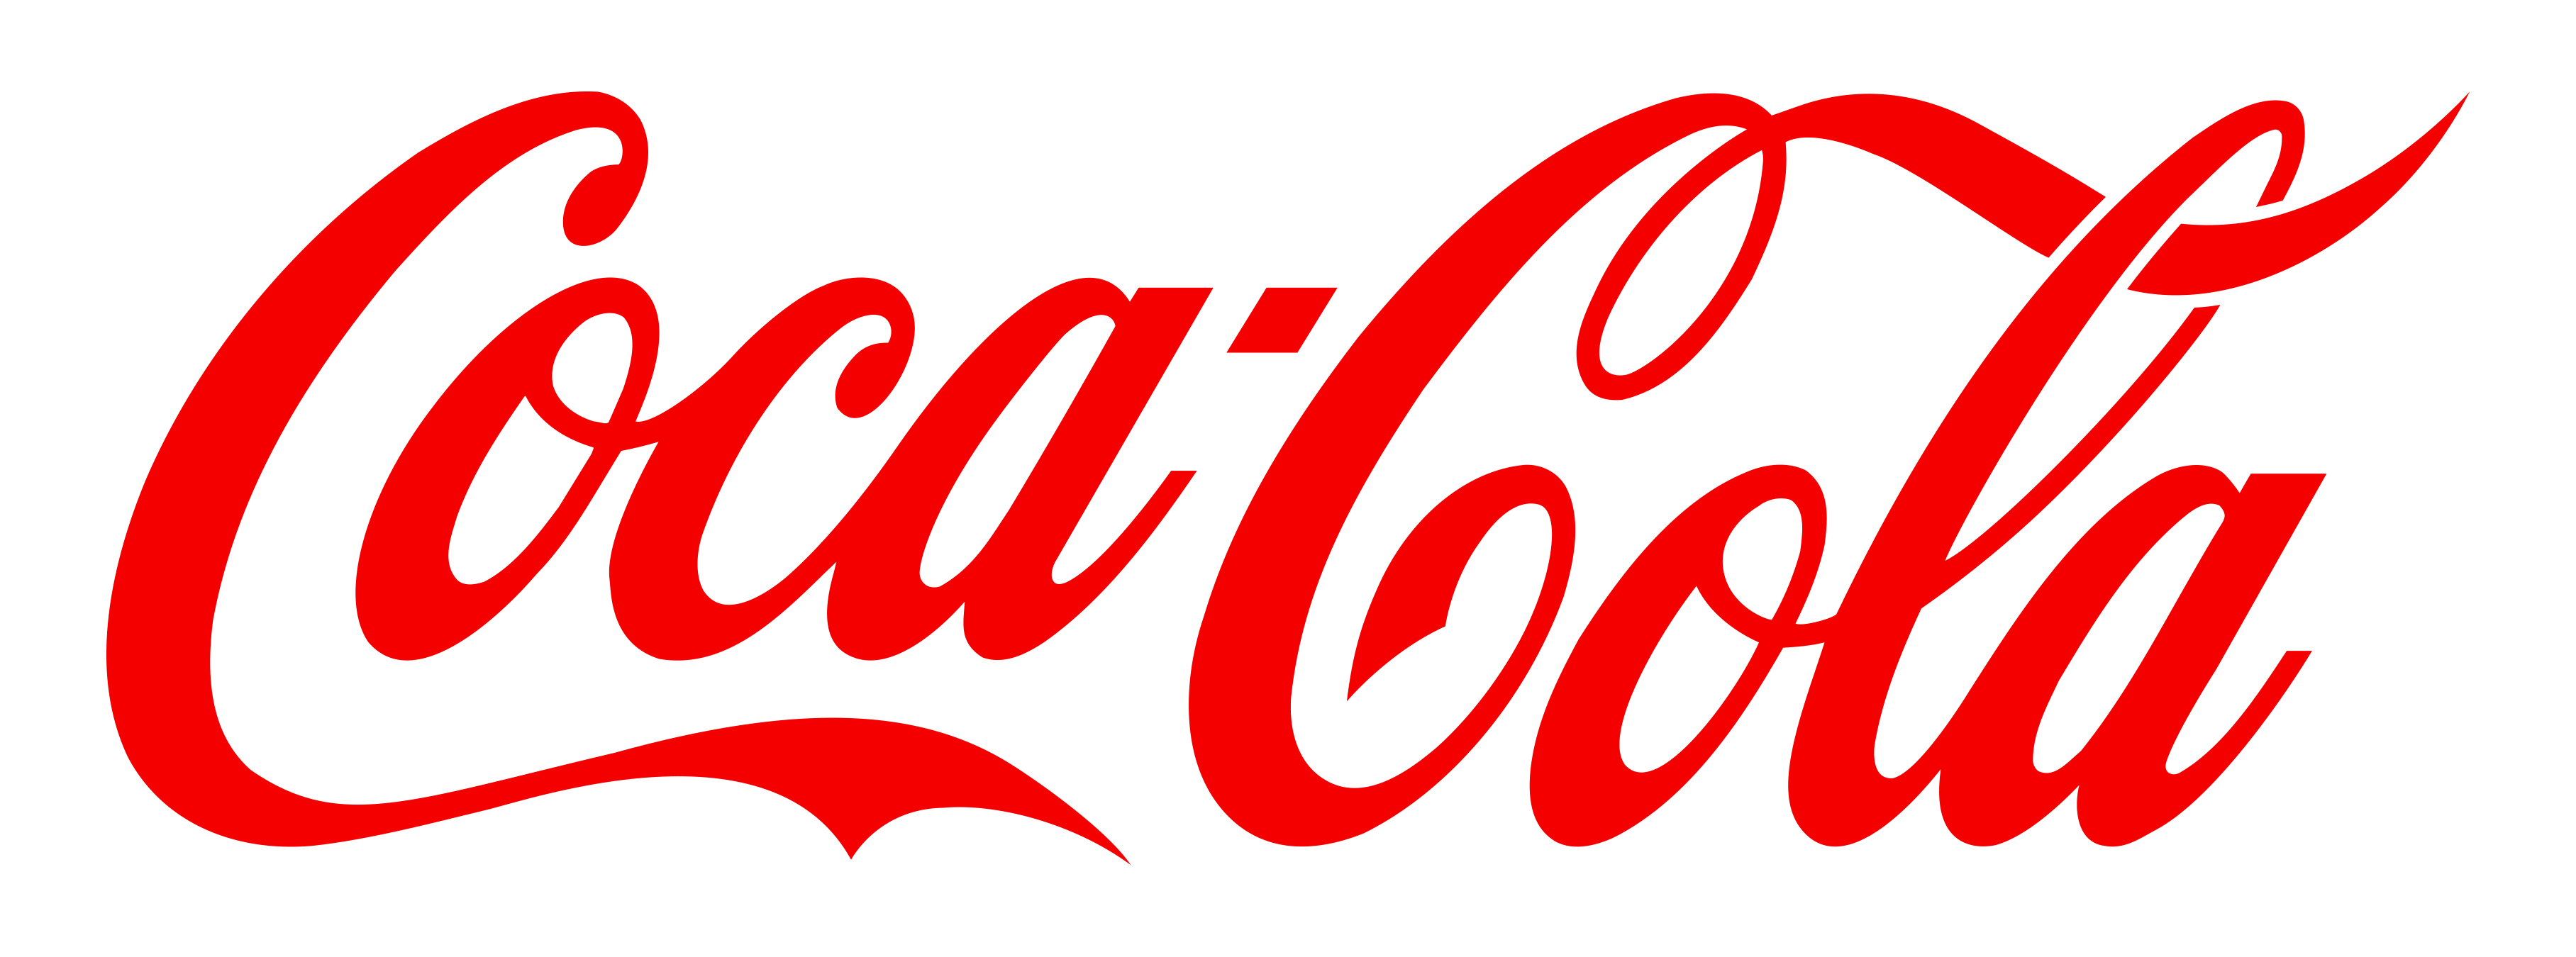 The Evolution Of Coca Cola Logo - Coca Cola Logo Evolution PNG Image | Transparent  PNG Free Download on SeekPNG